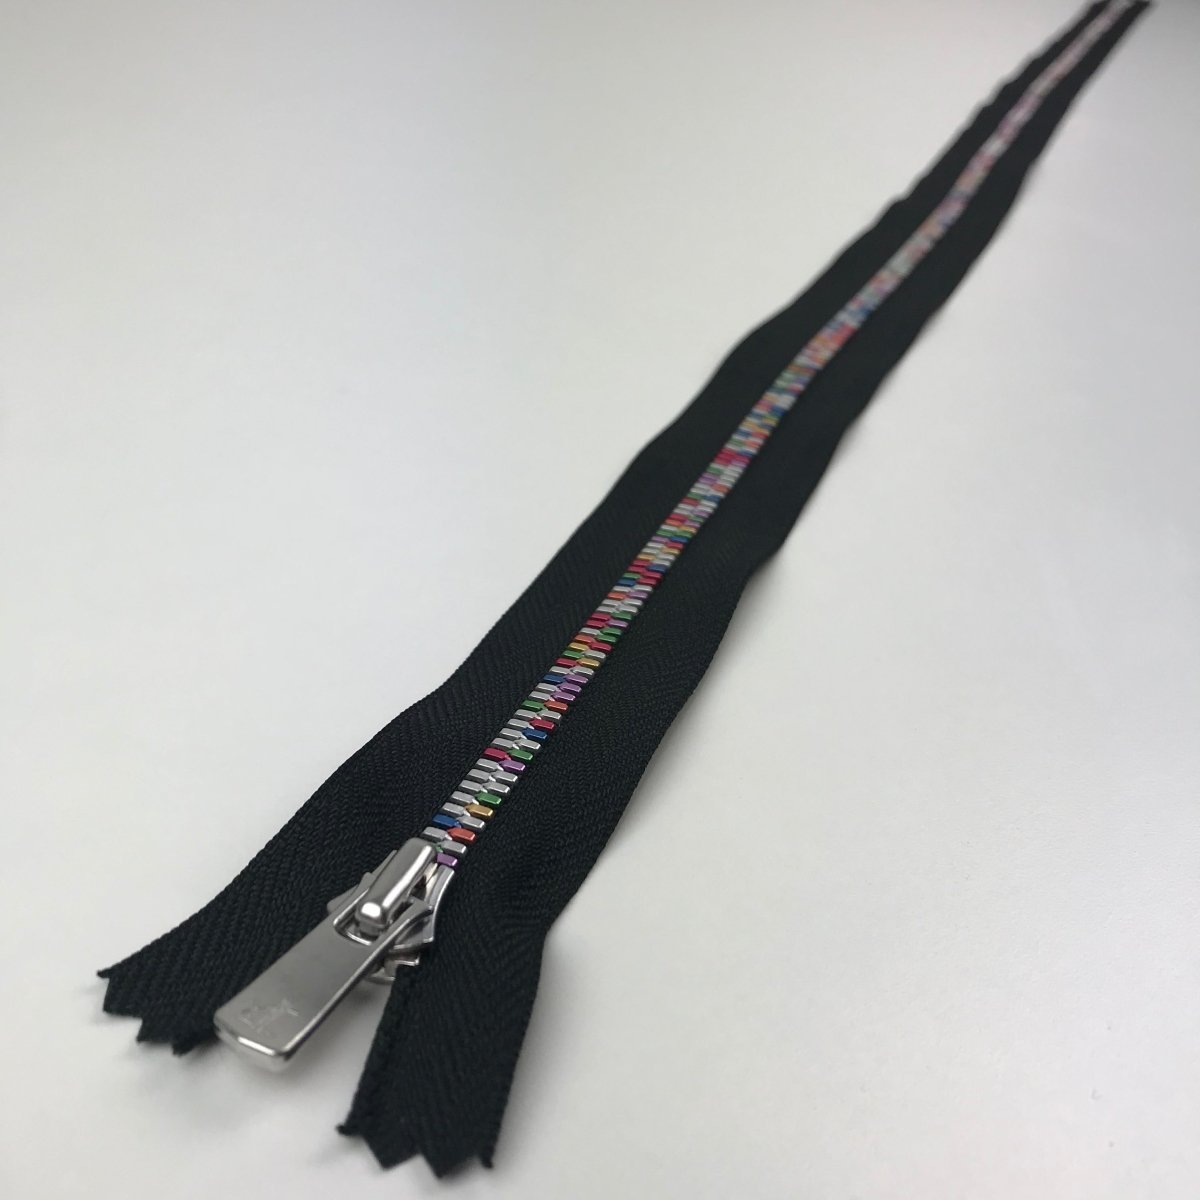 YKK Zipper - Exposed Metal Teeth - Rainbow - 91.5cm (36") - Sewing Gem